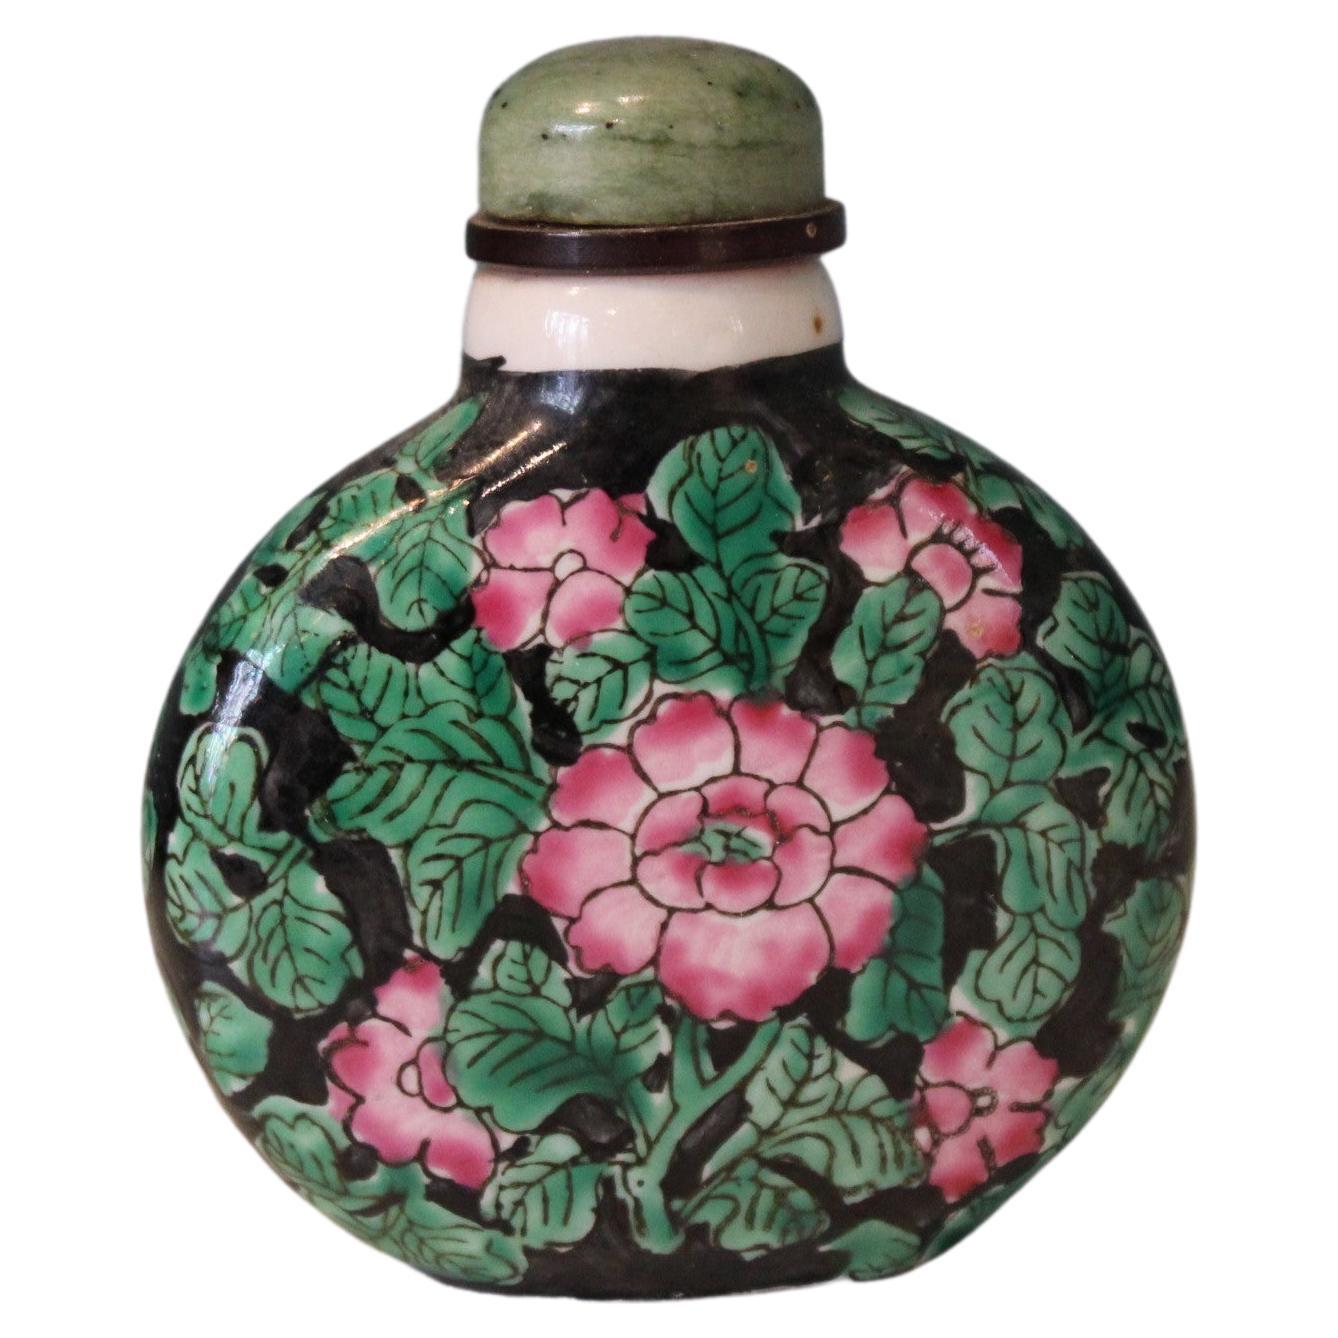 Chinesische Schnupftabakflasche aus Porzellan